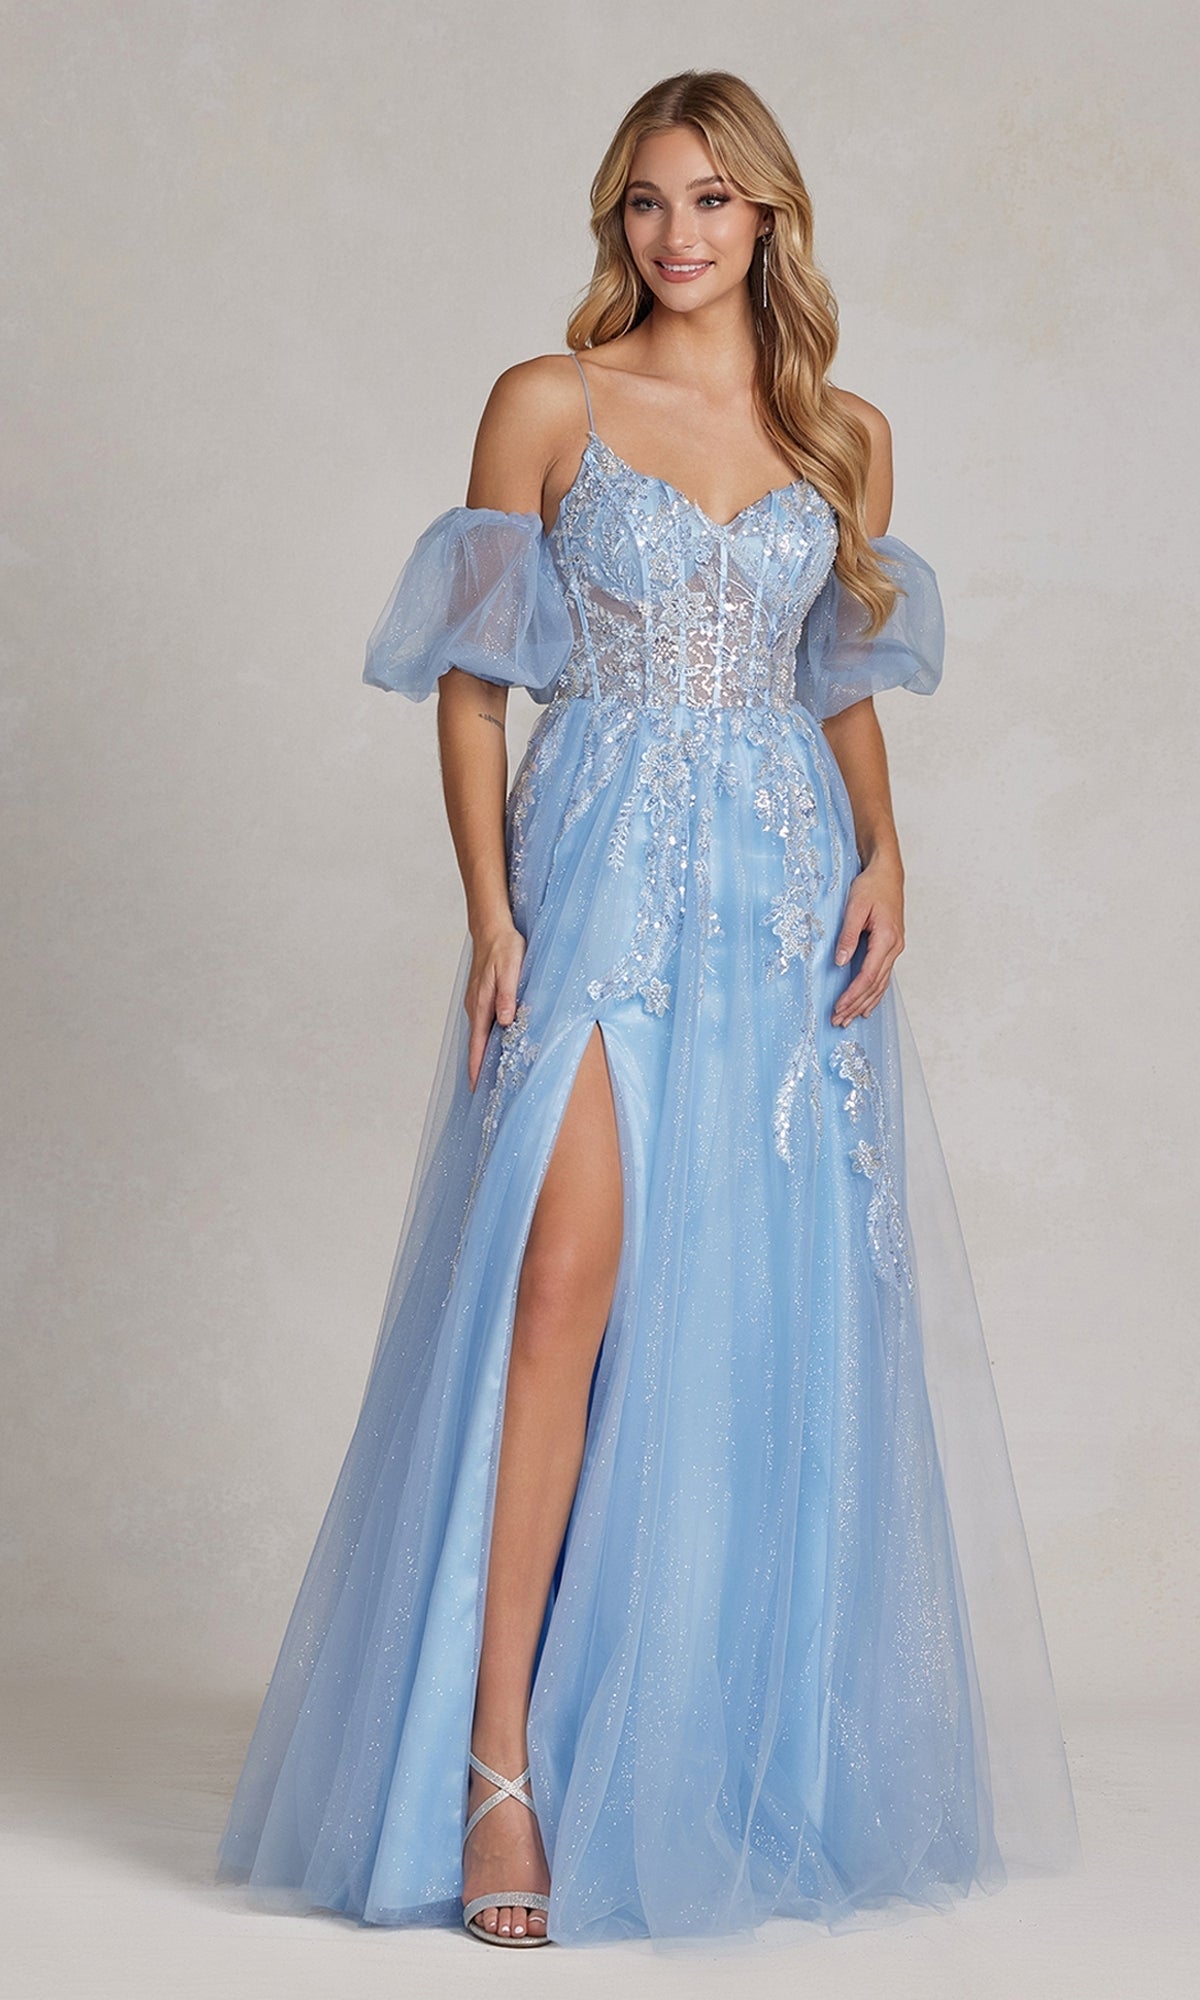 blue flowy dress